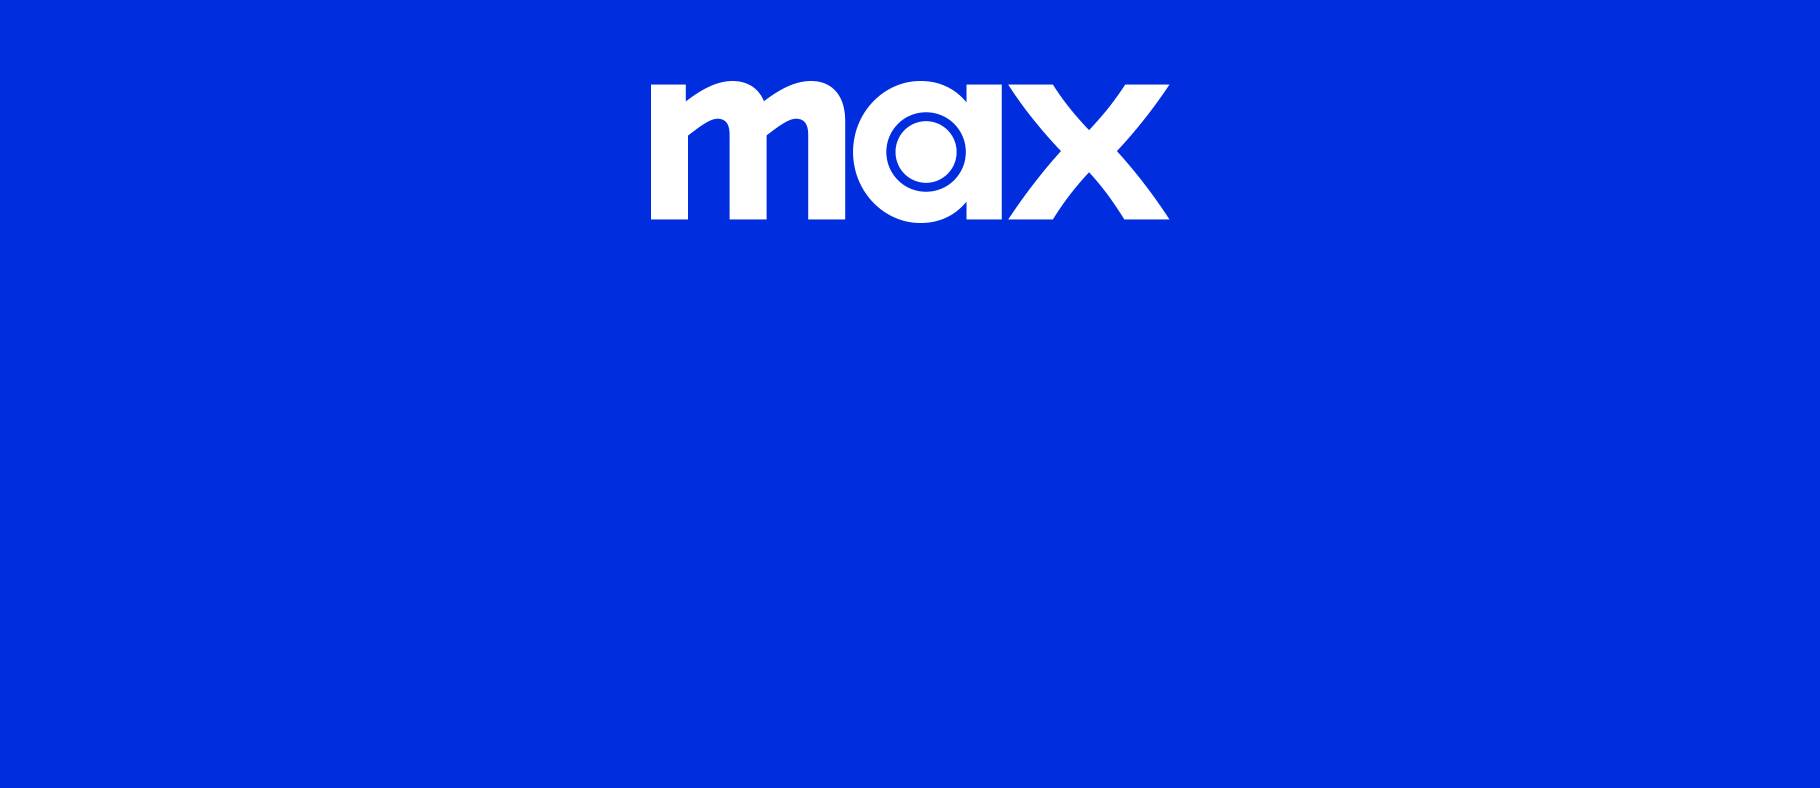 Max-logo-blue-high